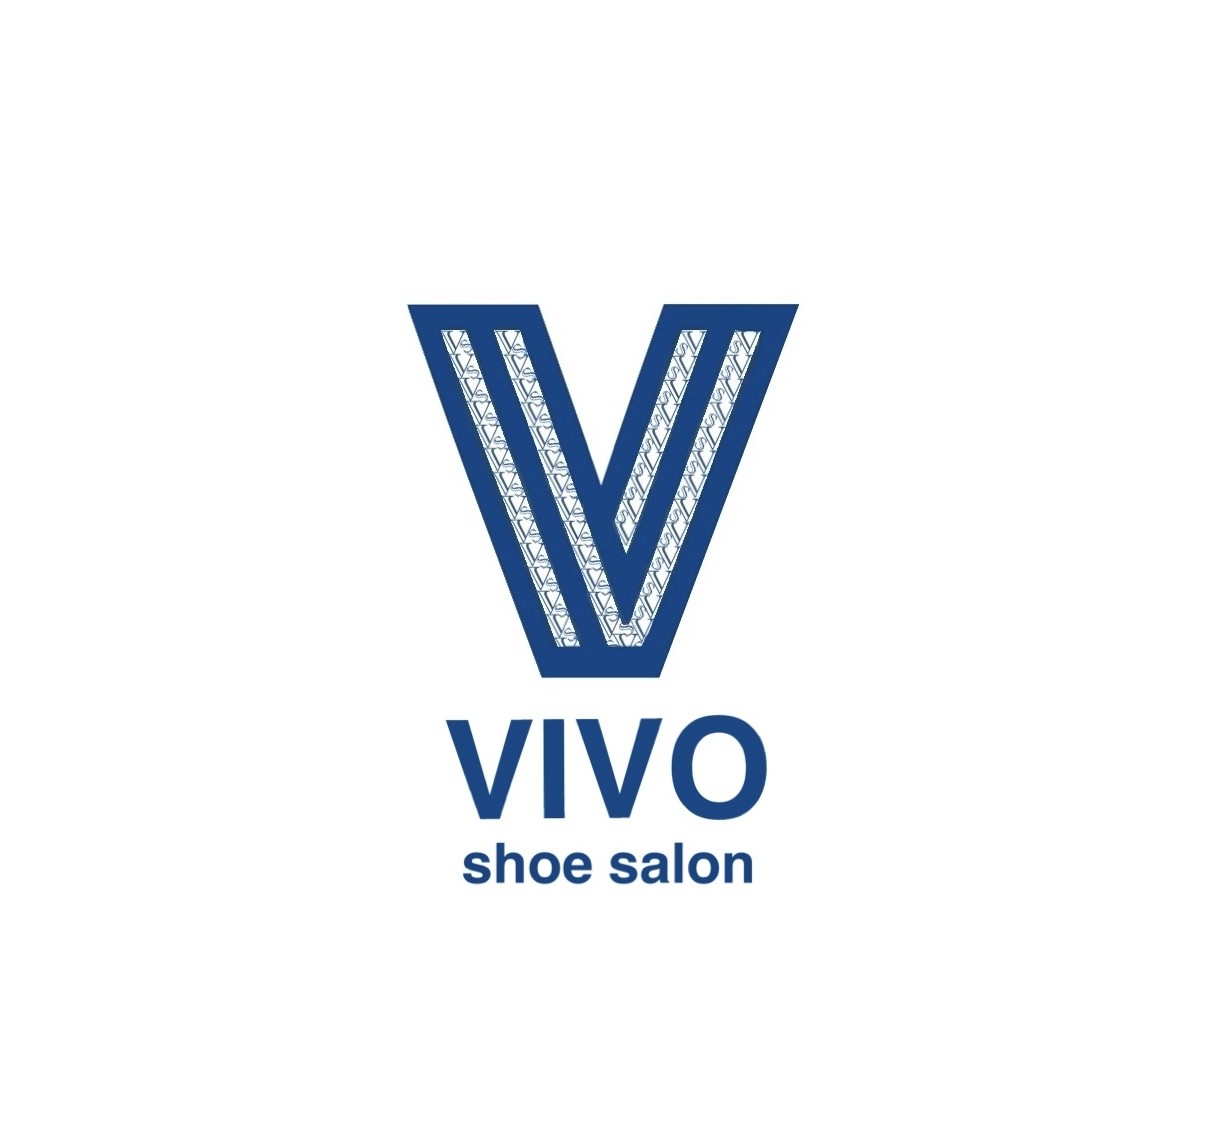 VIVO shoe salon